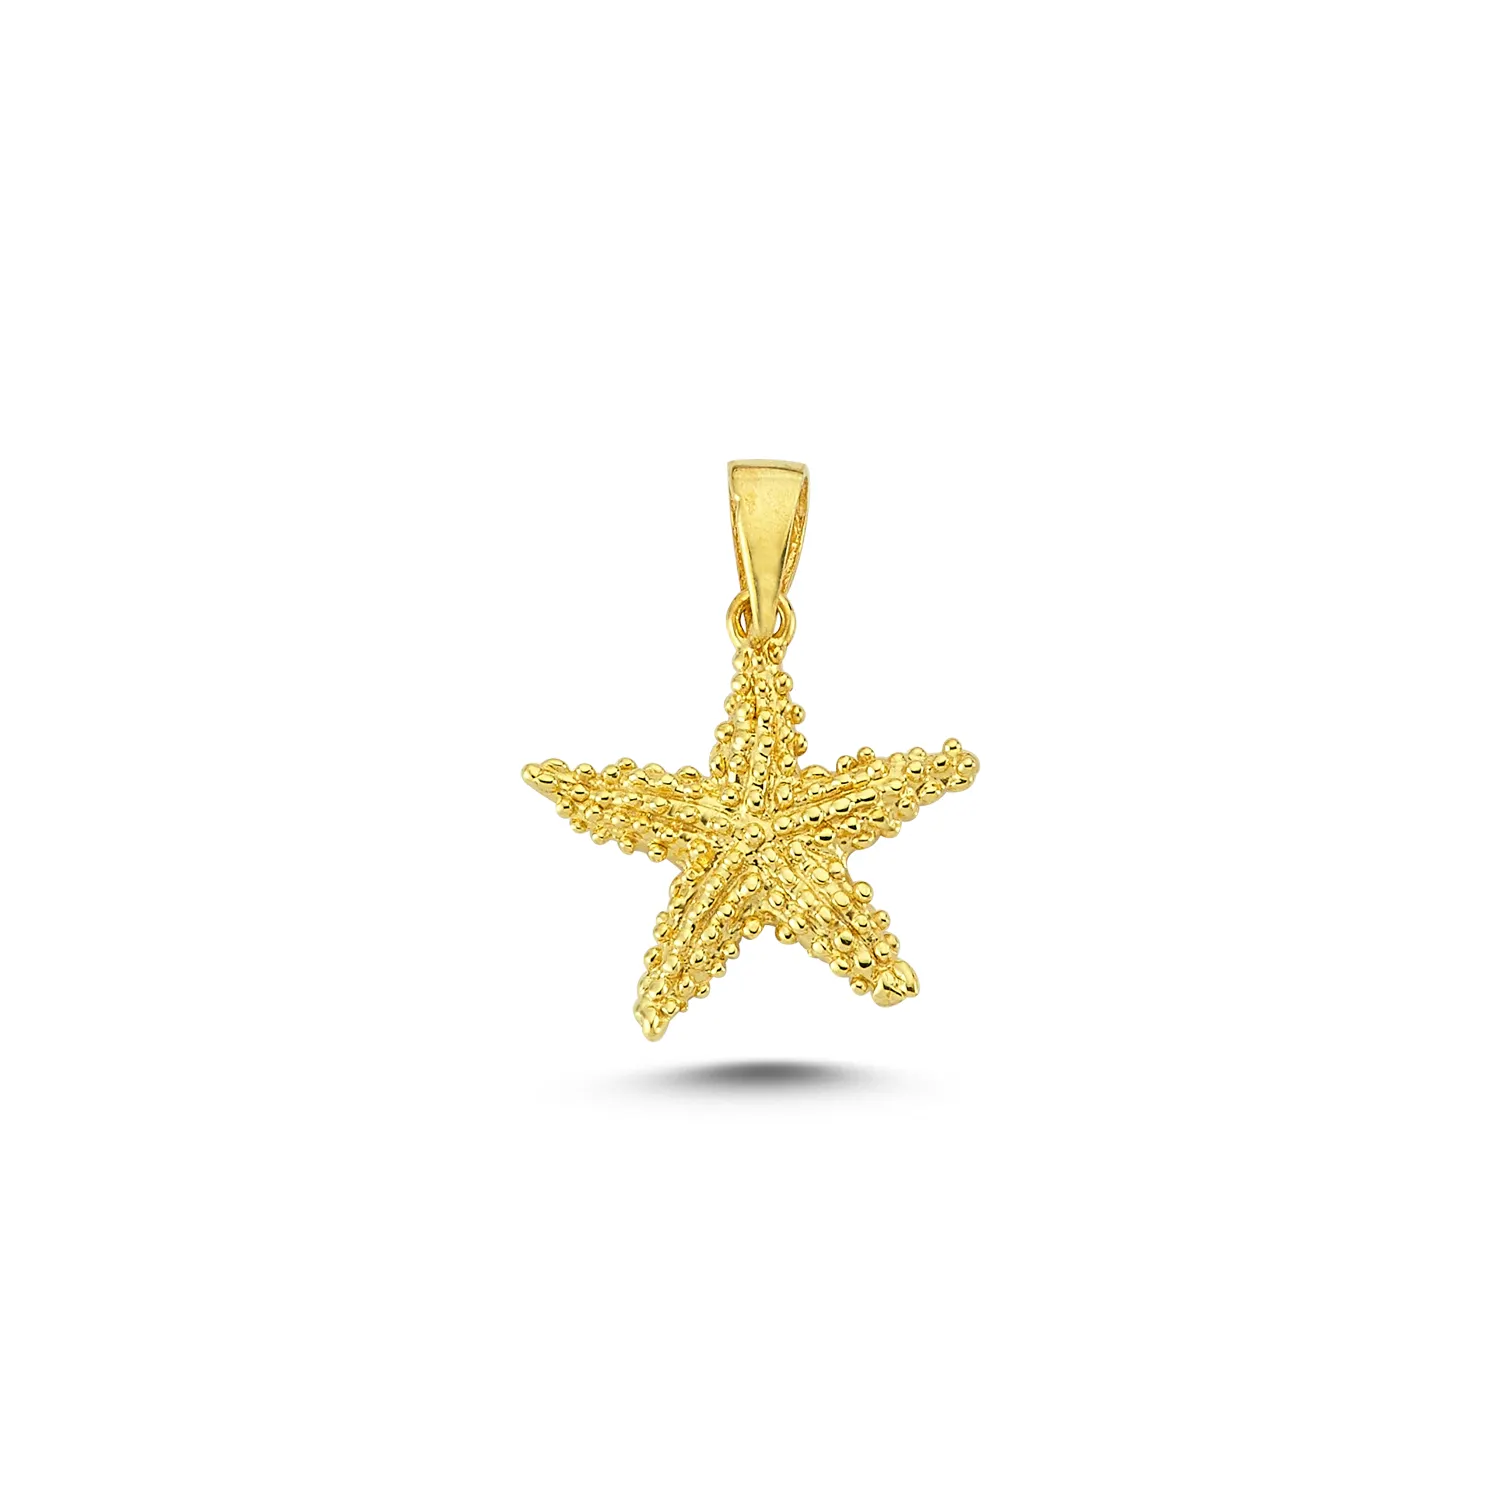 Colgante con forma de caballito de mar de estrella de mar, joyería de diseño artístico para amantes de los animales, 14K, oro sólido, novedad, venta al por mayor de Turquía